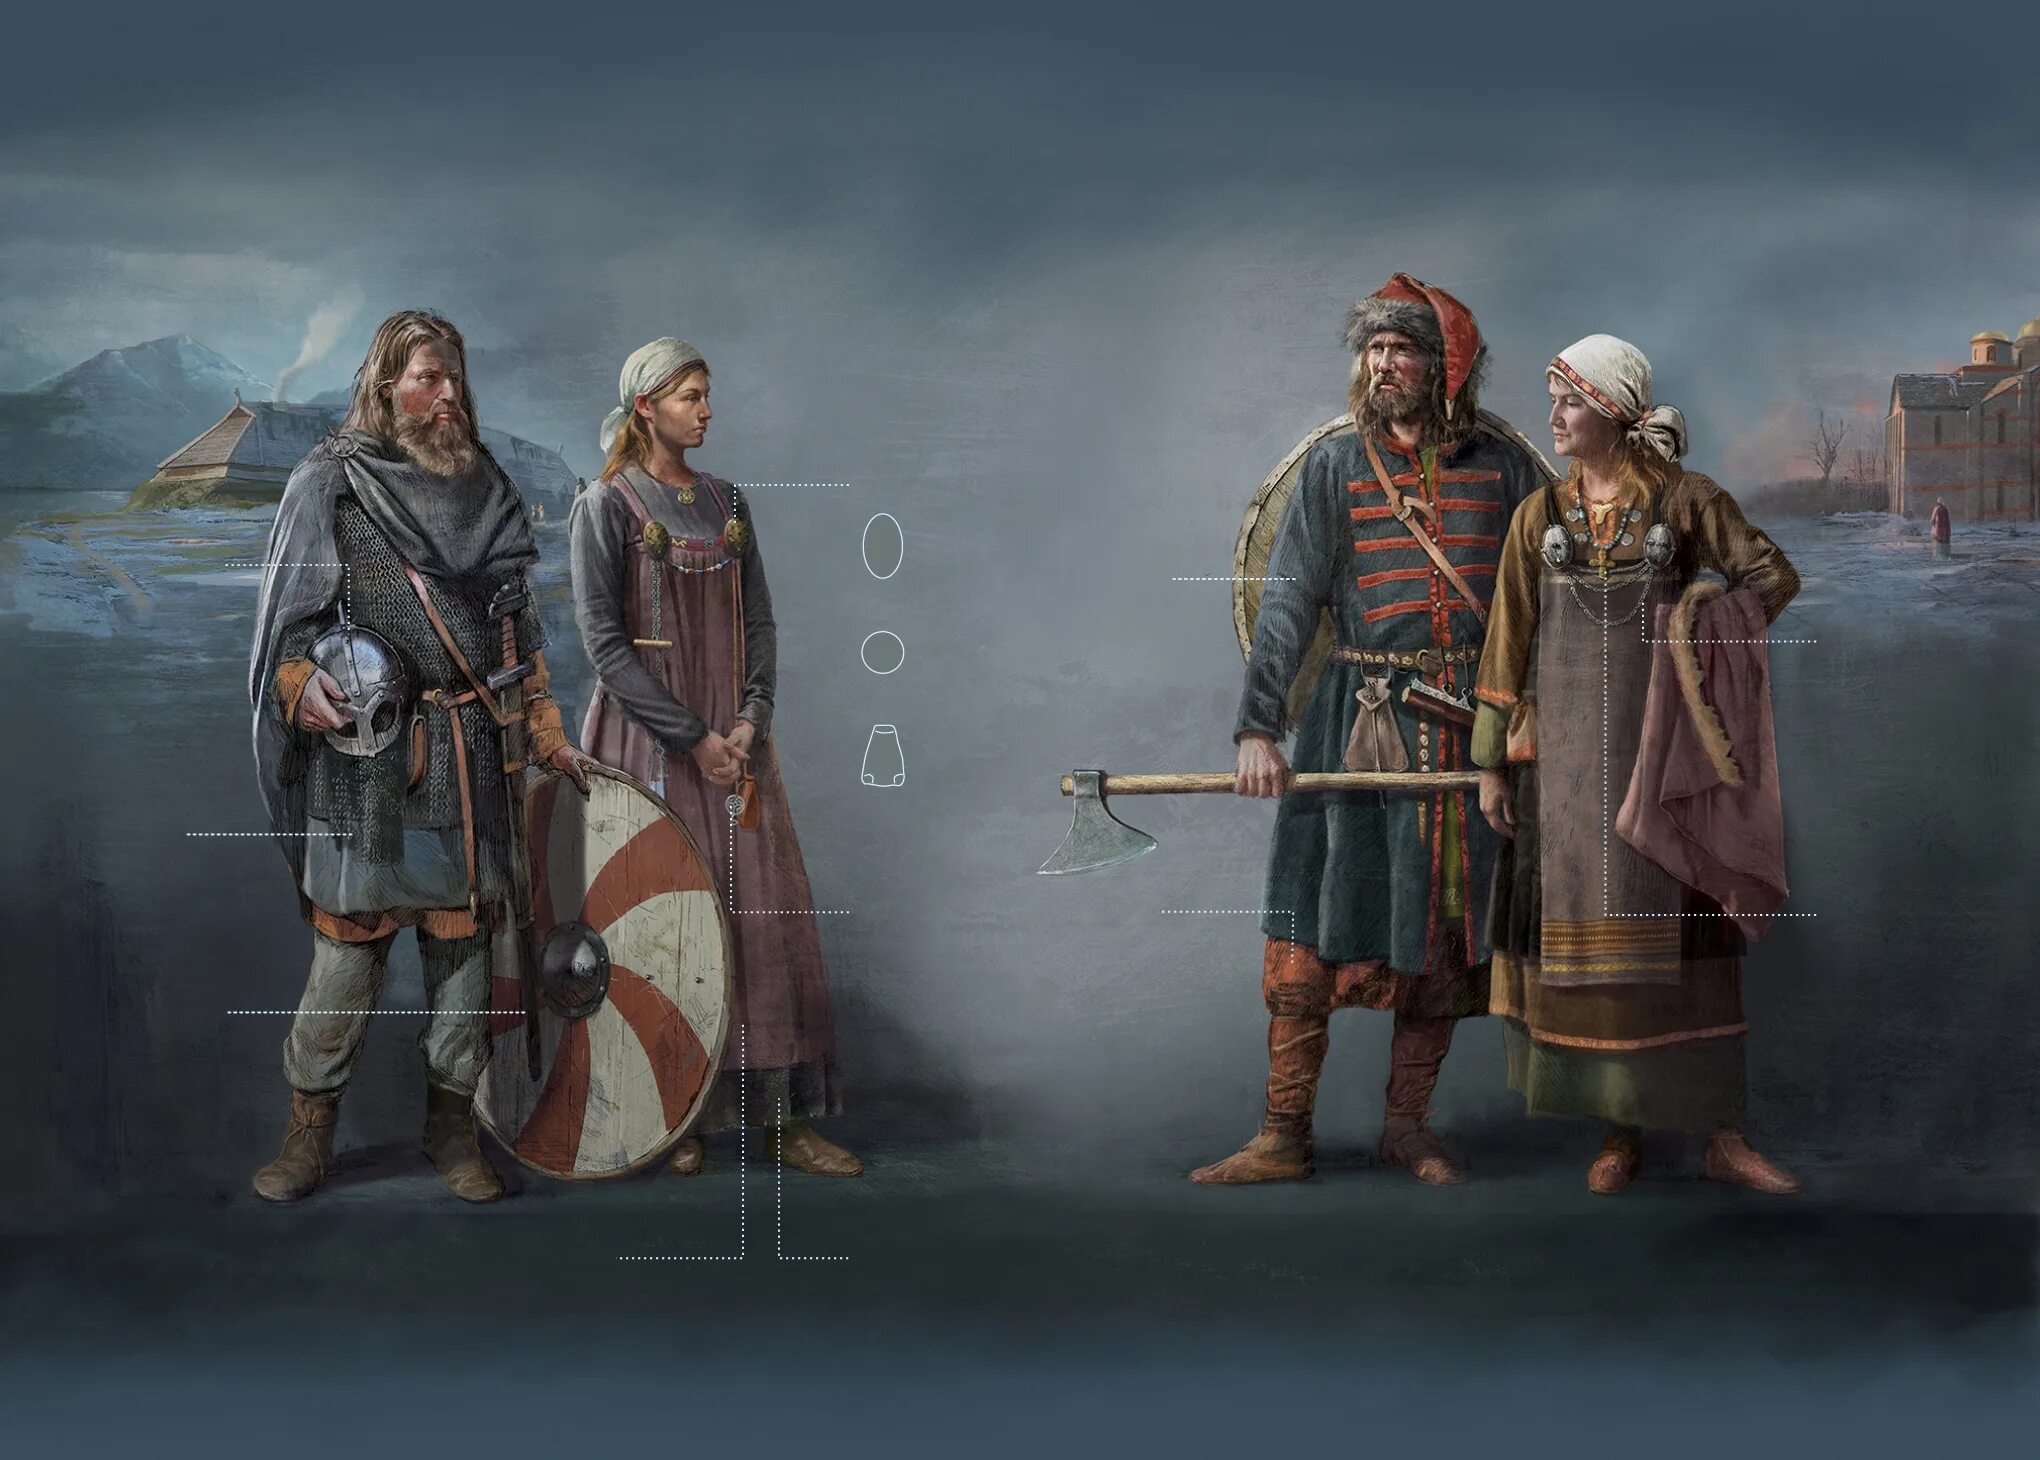 10 век эпоха. Одежда 10 век воины Скандинавия. Викинги Скандинавия 10 век. Норманны скандинавы. Реконструкция викинга 9 век.